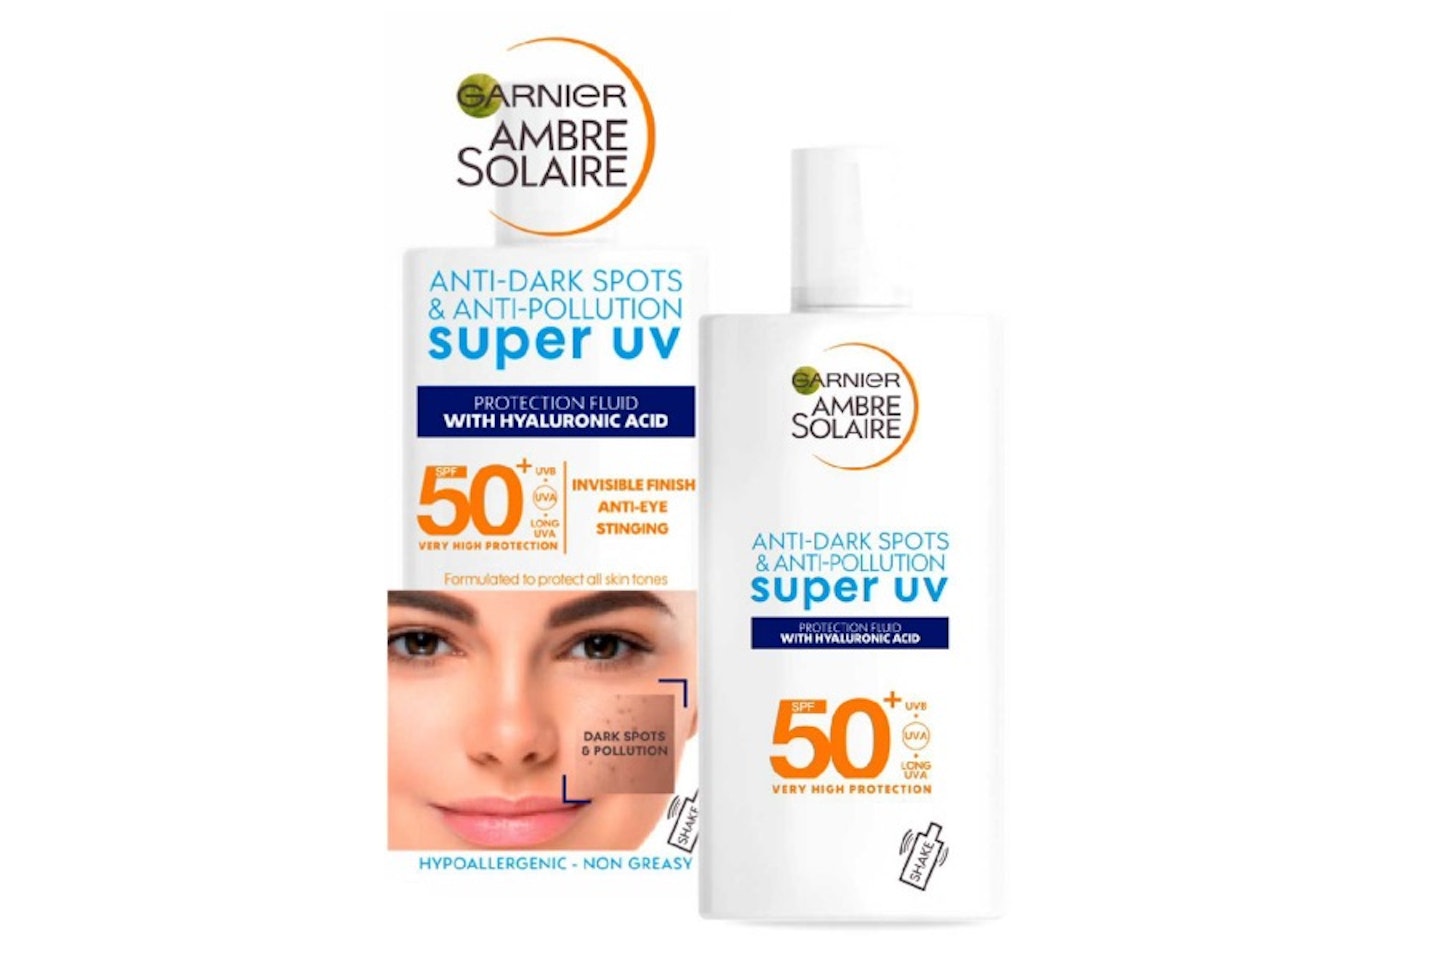 Garnier Ambre Solaire Super UV Anti Dark Spots & Anti Pollution Face Fluid SPF50+ 40ml